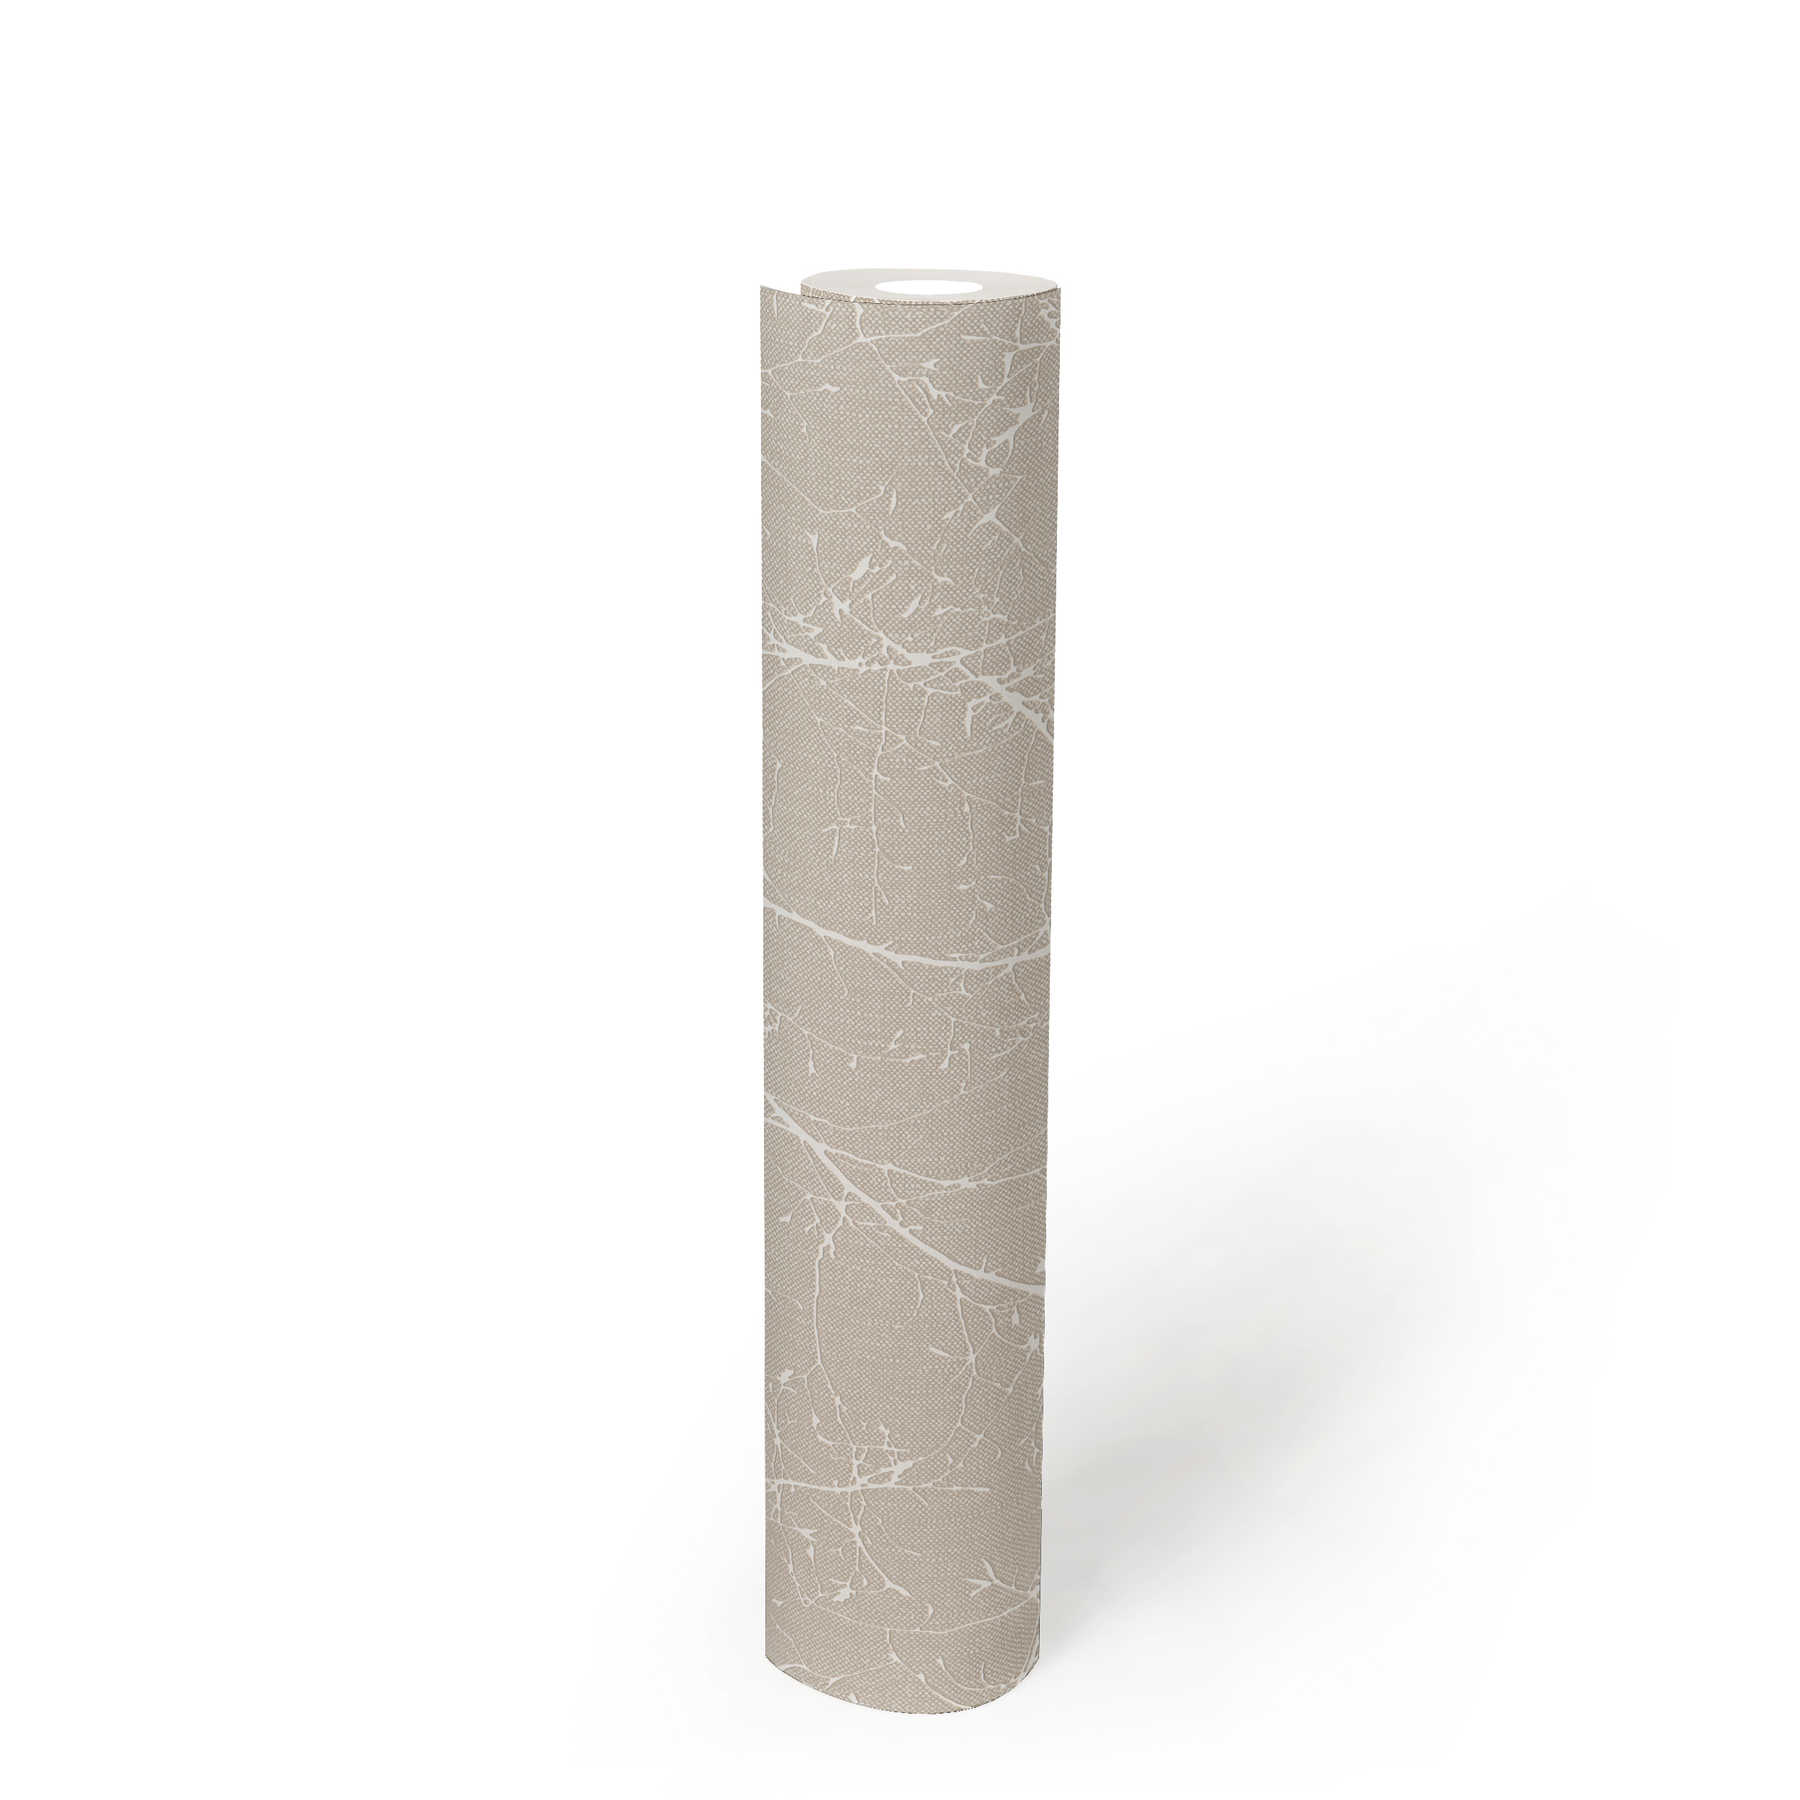             Papier peint intissé imitation lin fleurs et branches - beige, blanc
        